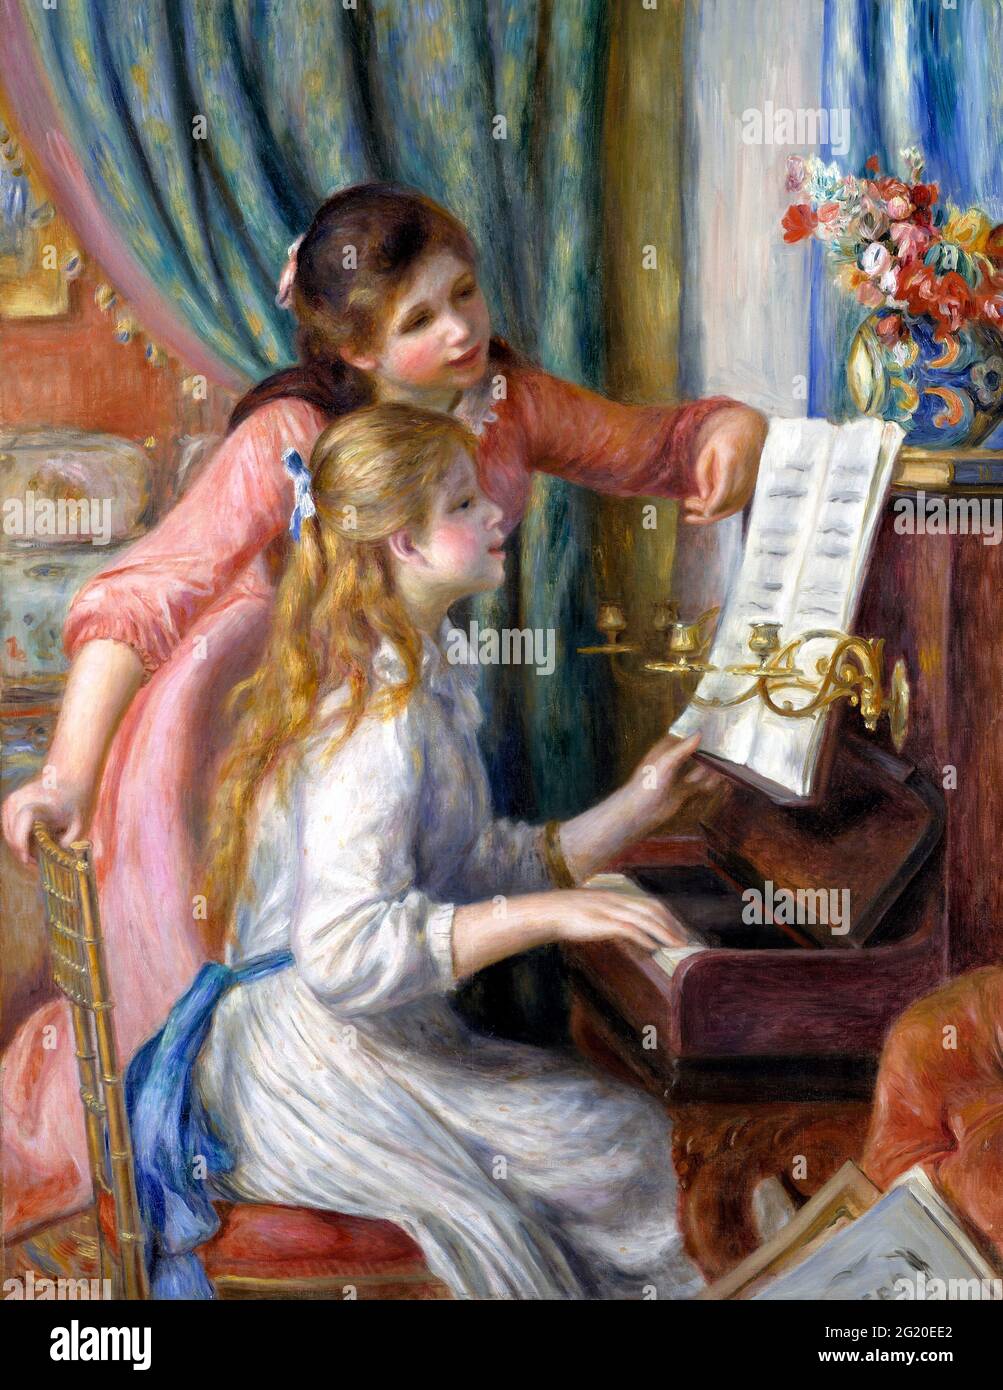 Zwei junge Mädchen am Klavier von Pierre Auguste Renoir (1841-1919), Öl auf Leinwand, 1892 Stockfoto